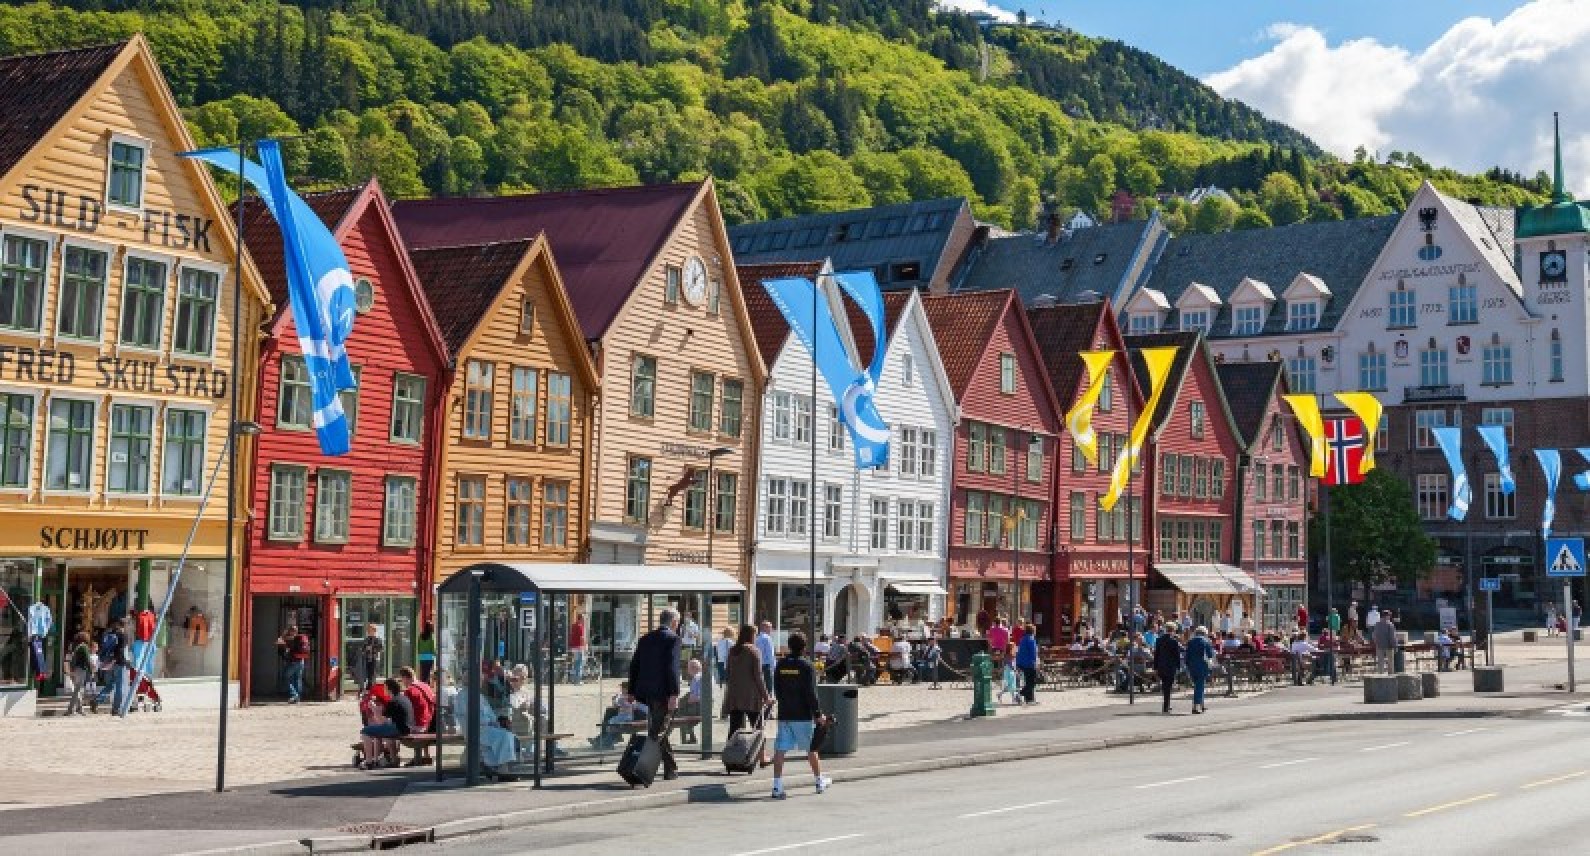 W Bergen rośnie liczba zakażeń koronawirusem. Władze zaostrzają środki kontroli